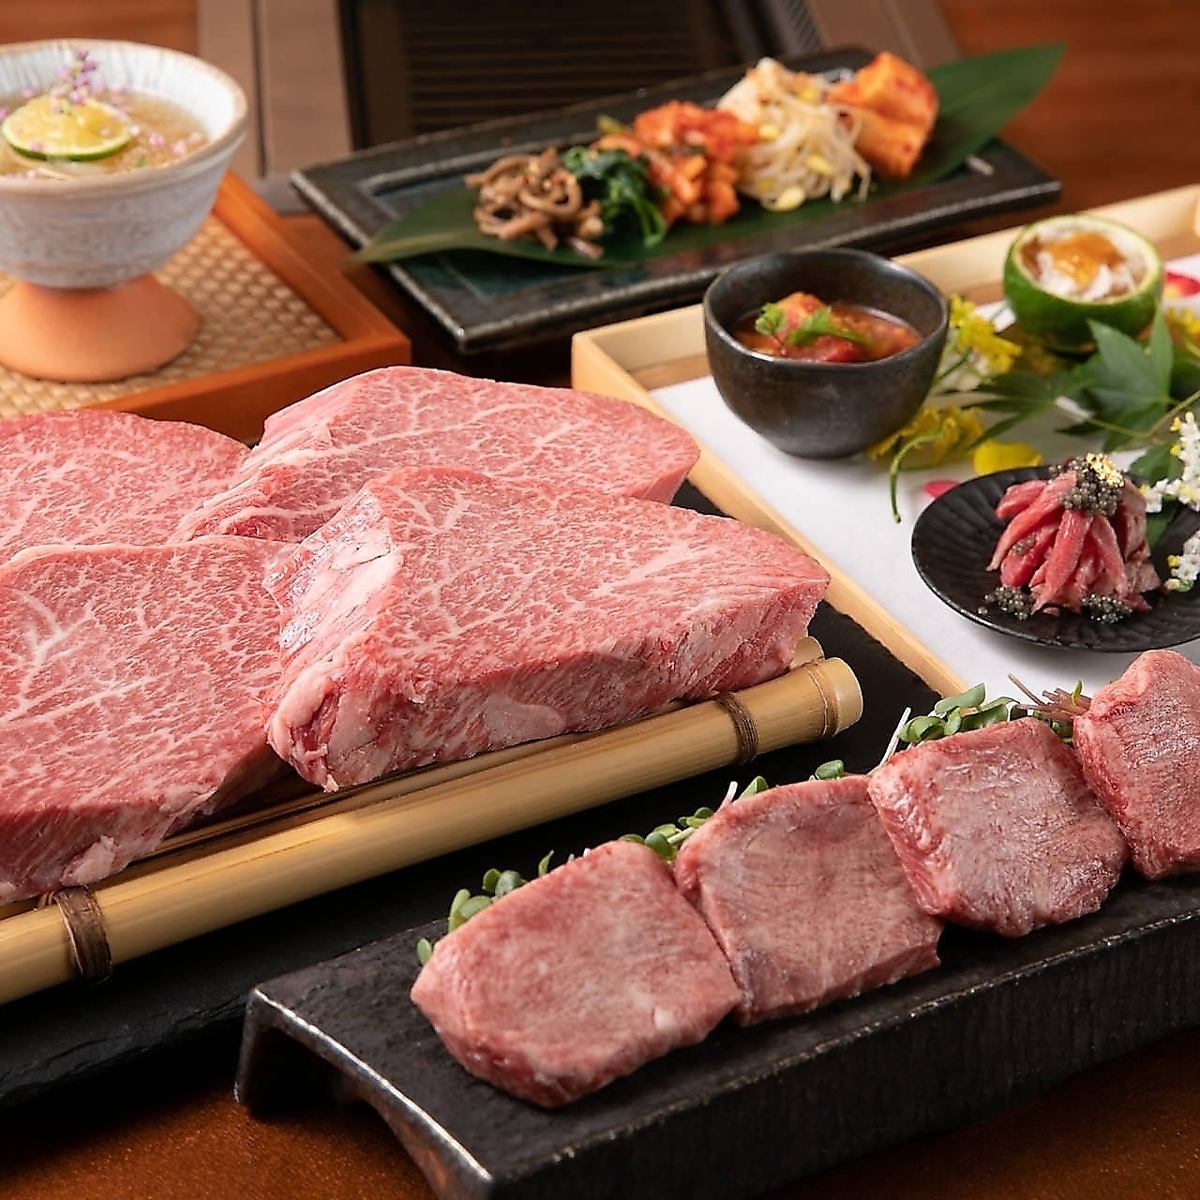 坐在沙发上悠闲地享用正宗炭烤烤肉！90分钟、35道菜品、1,980日元～◎